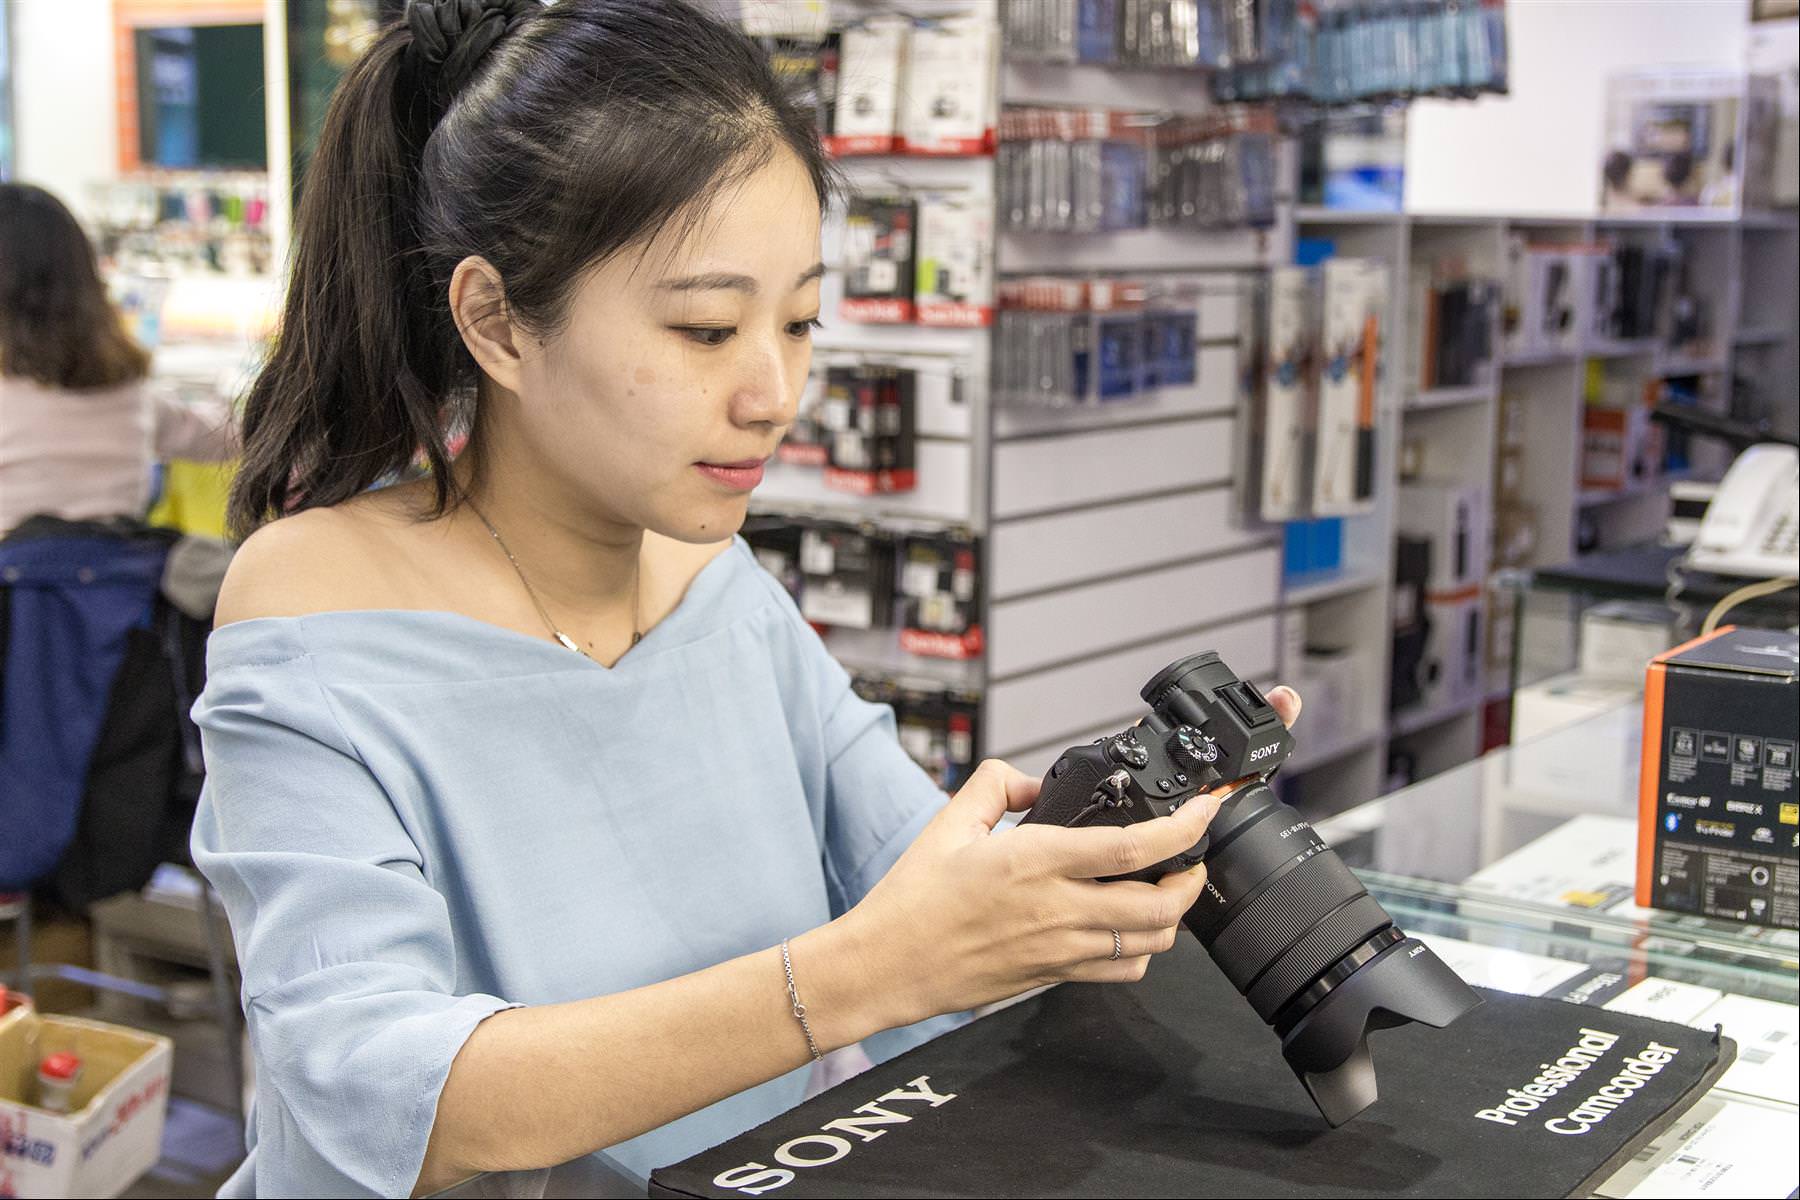 [聊攝影224] 購買相機注意事項 - 實體店面購買相機消費該注意的事